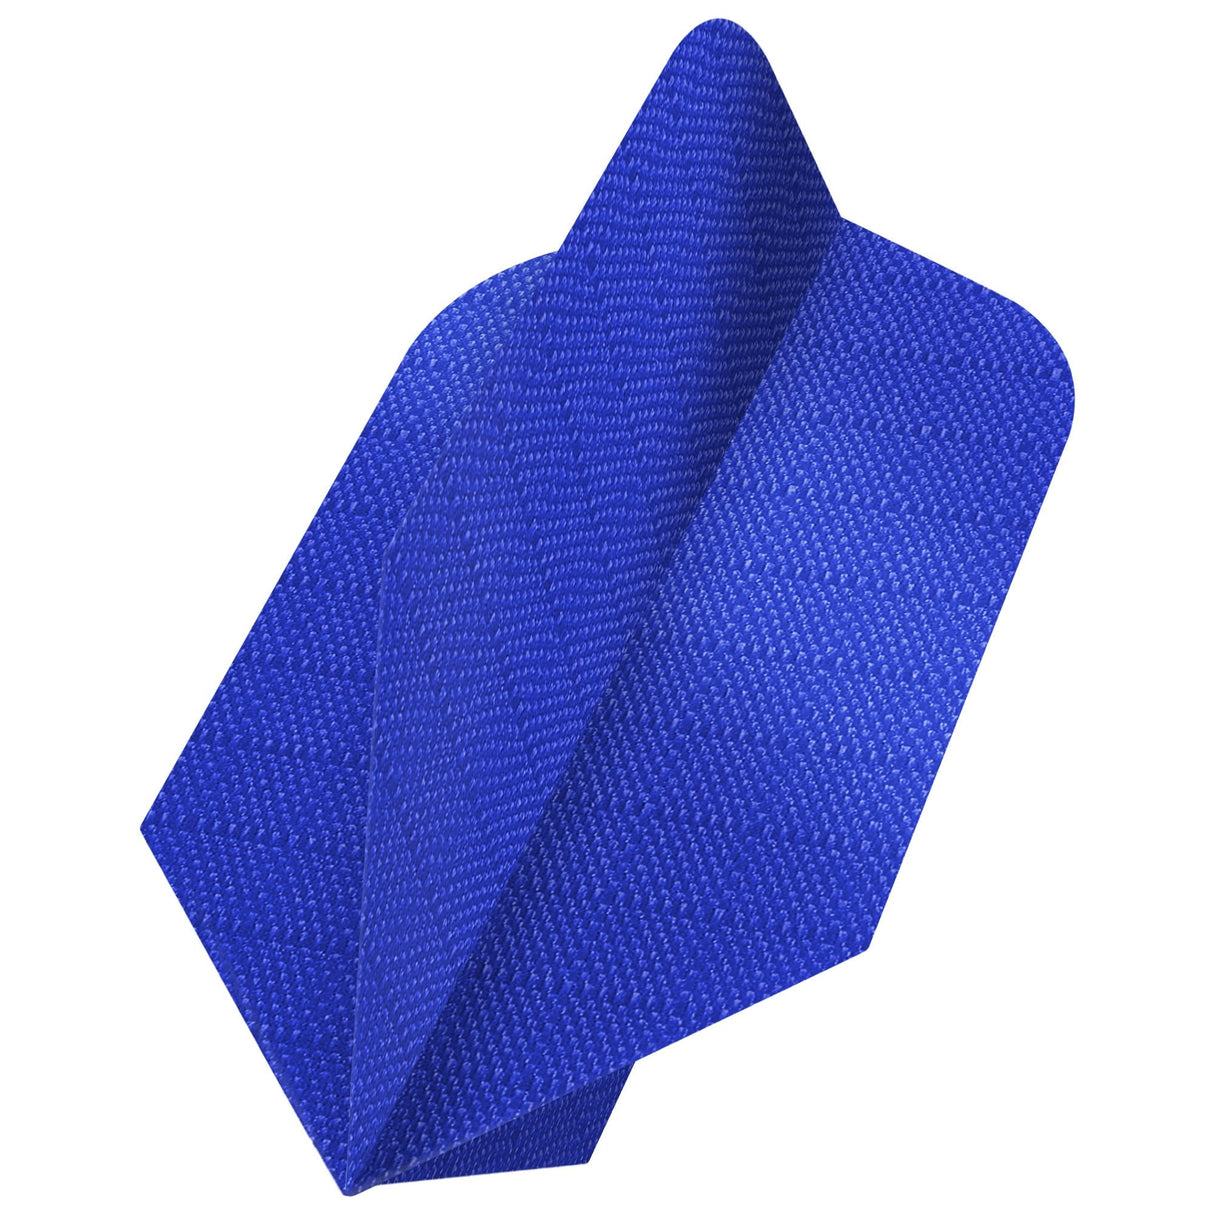 Designa Dart Flights - Fabric Rip Stop Nylon - Longlife - Slim